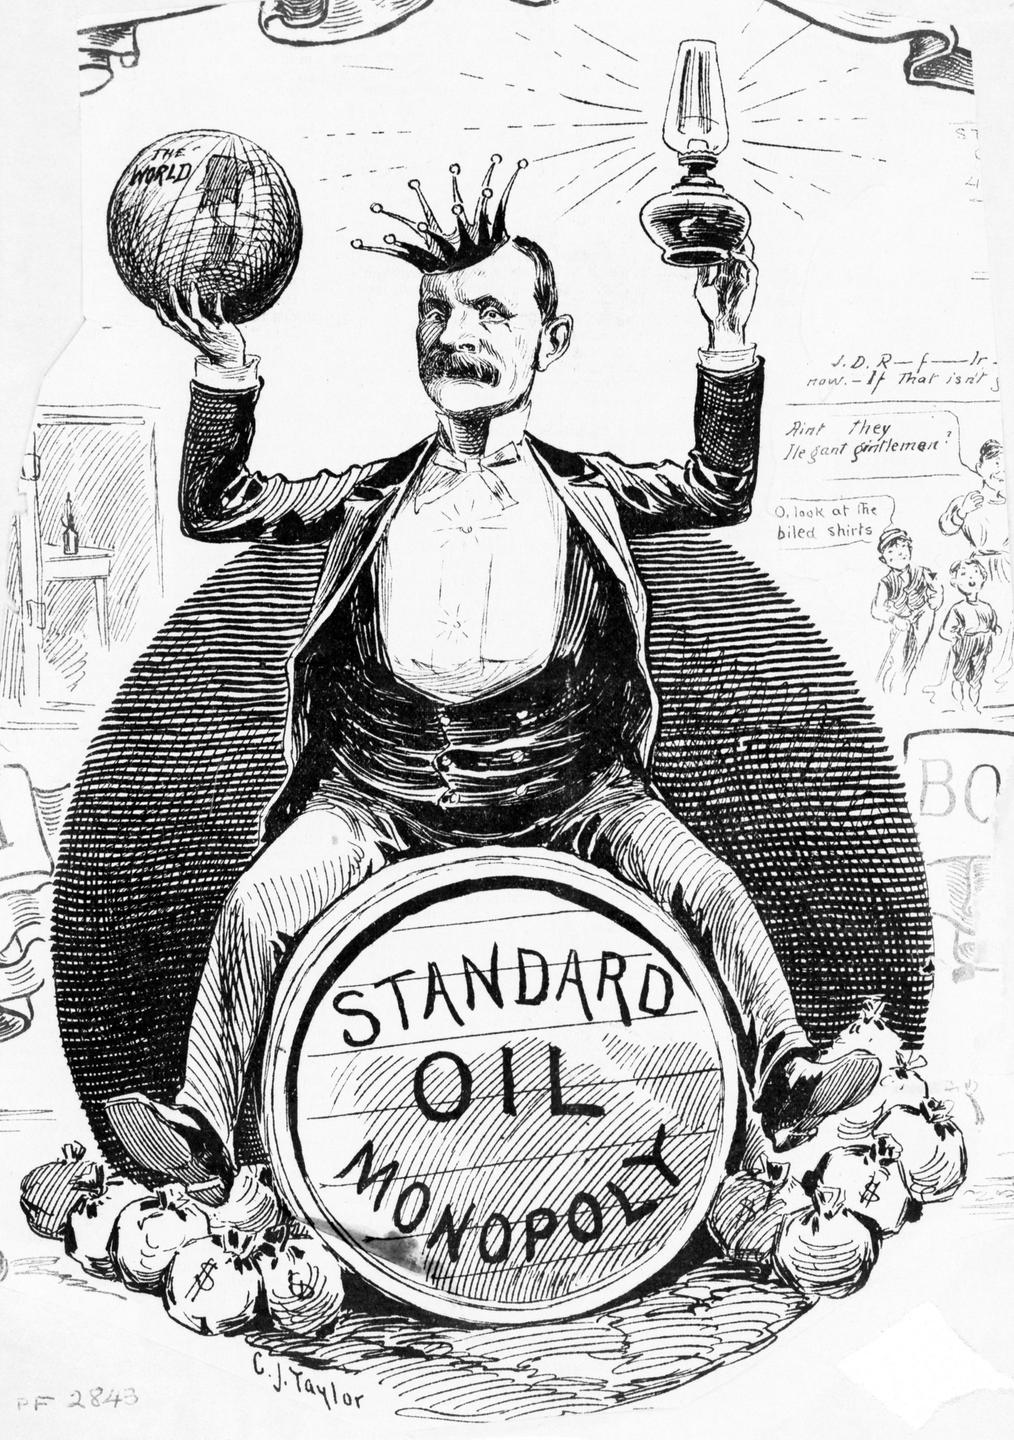 Eine Karikatur, die den Standard-Oil-Präsidenten John D. Rockefeller als "König der Welt" zeichnet.